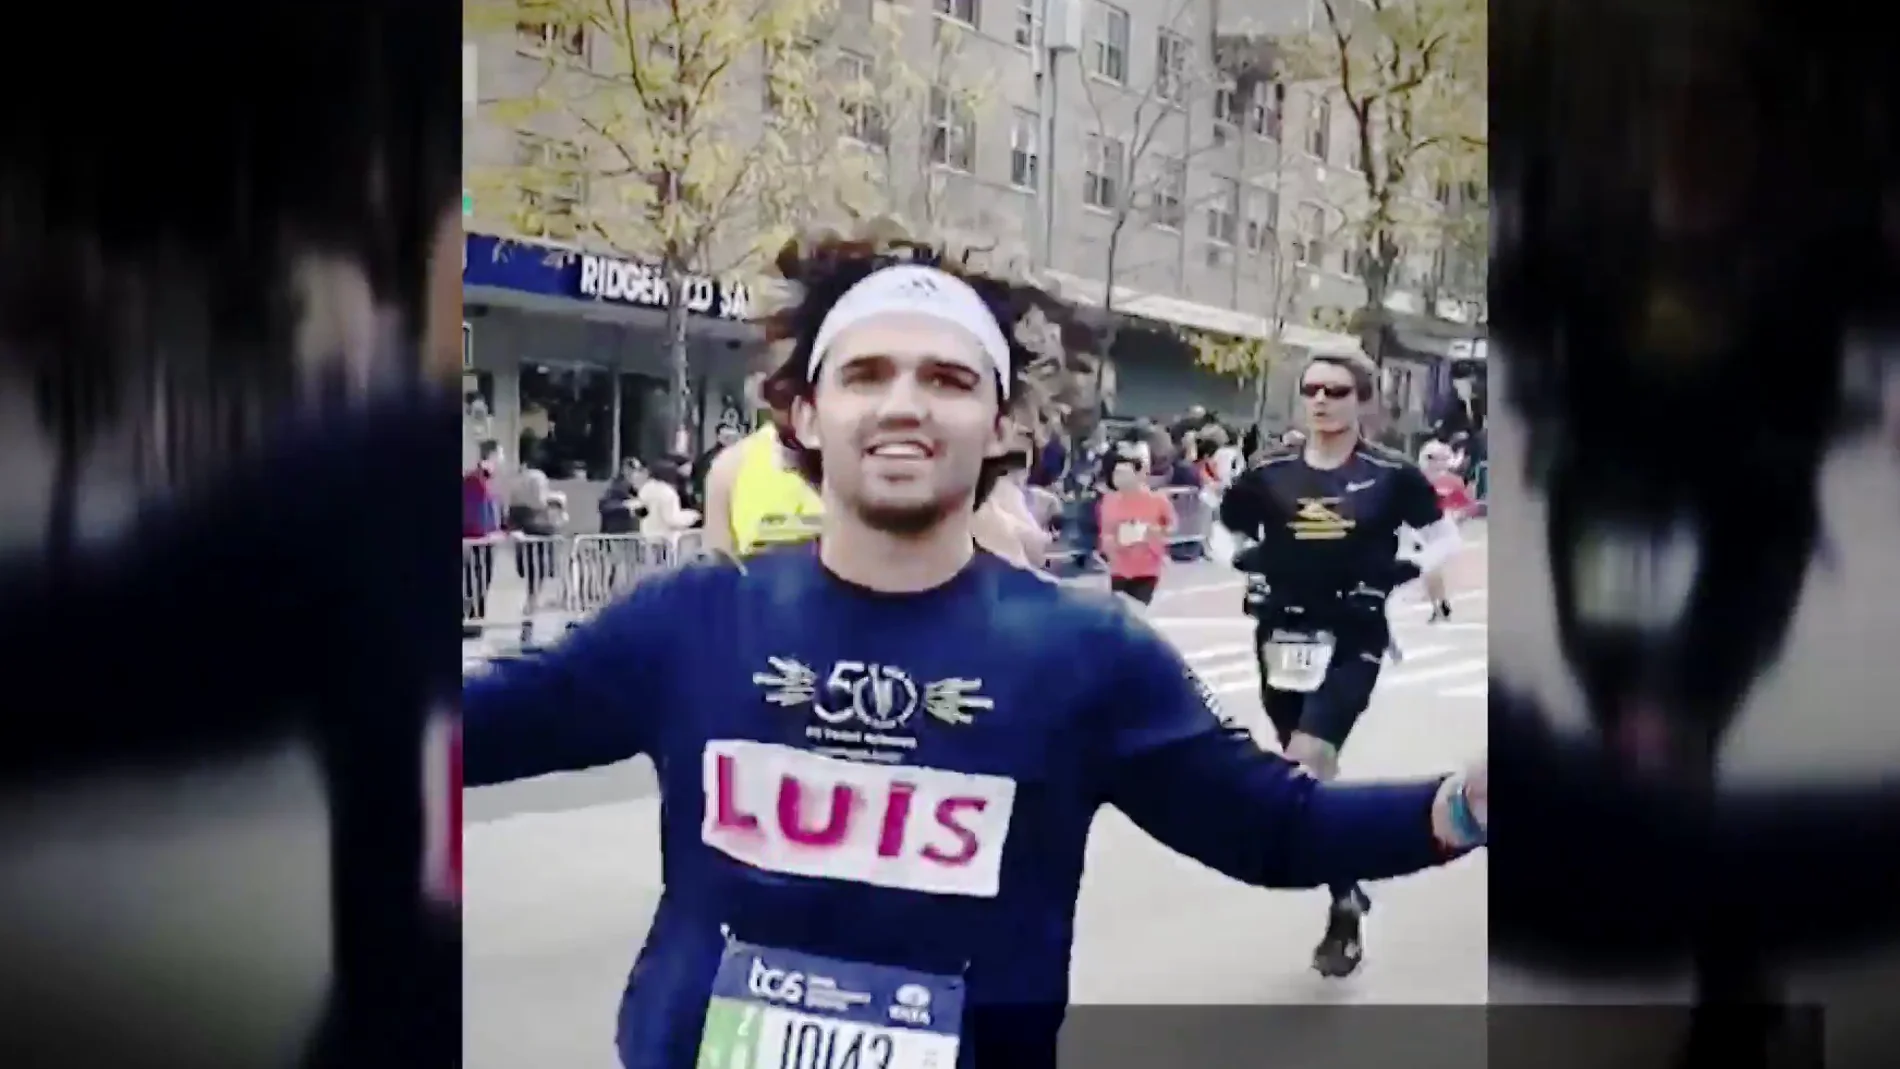 Luis Muñoz, de correr un maratón en casa a que le invite la televisión al de Nueva York: "Lo más duro que he vivido"